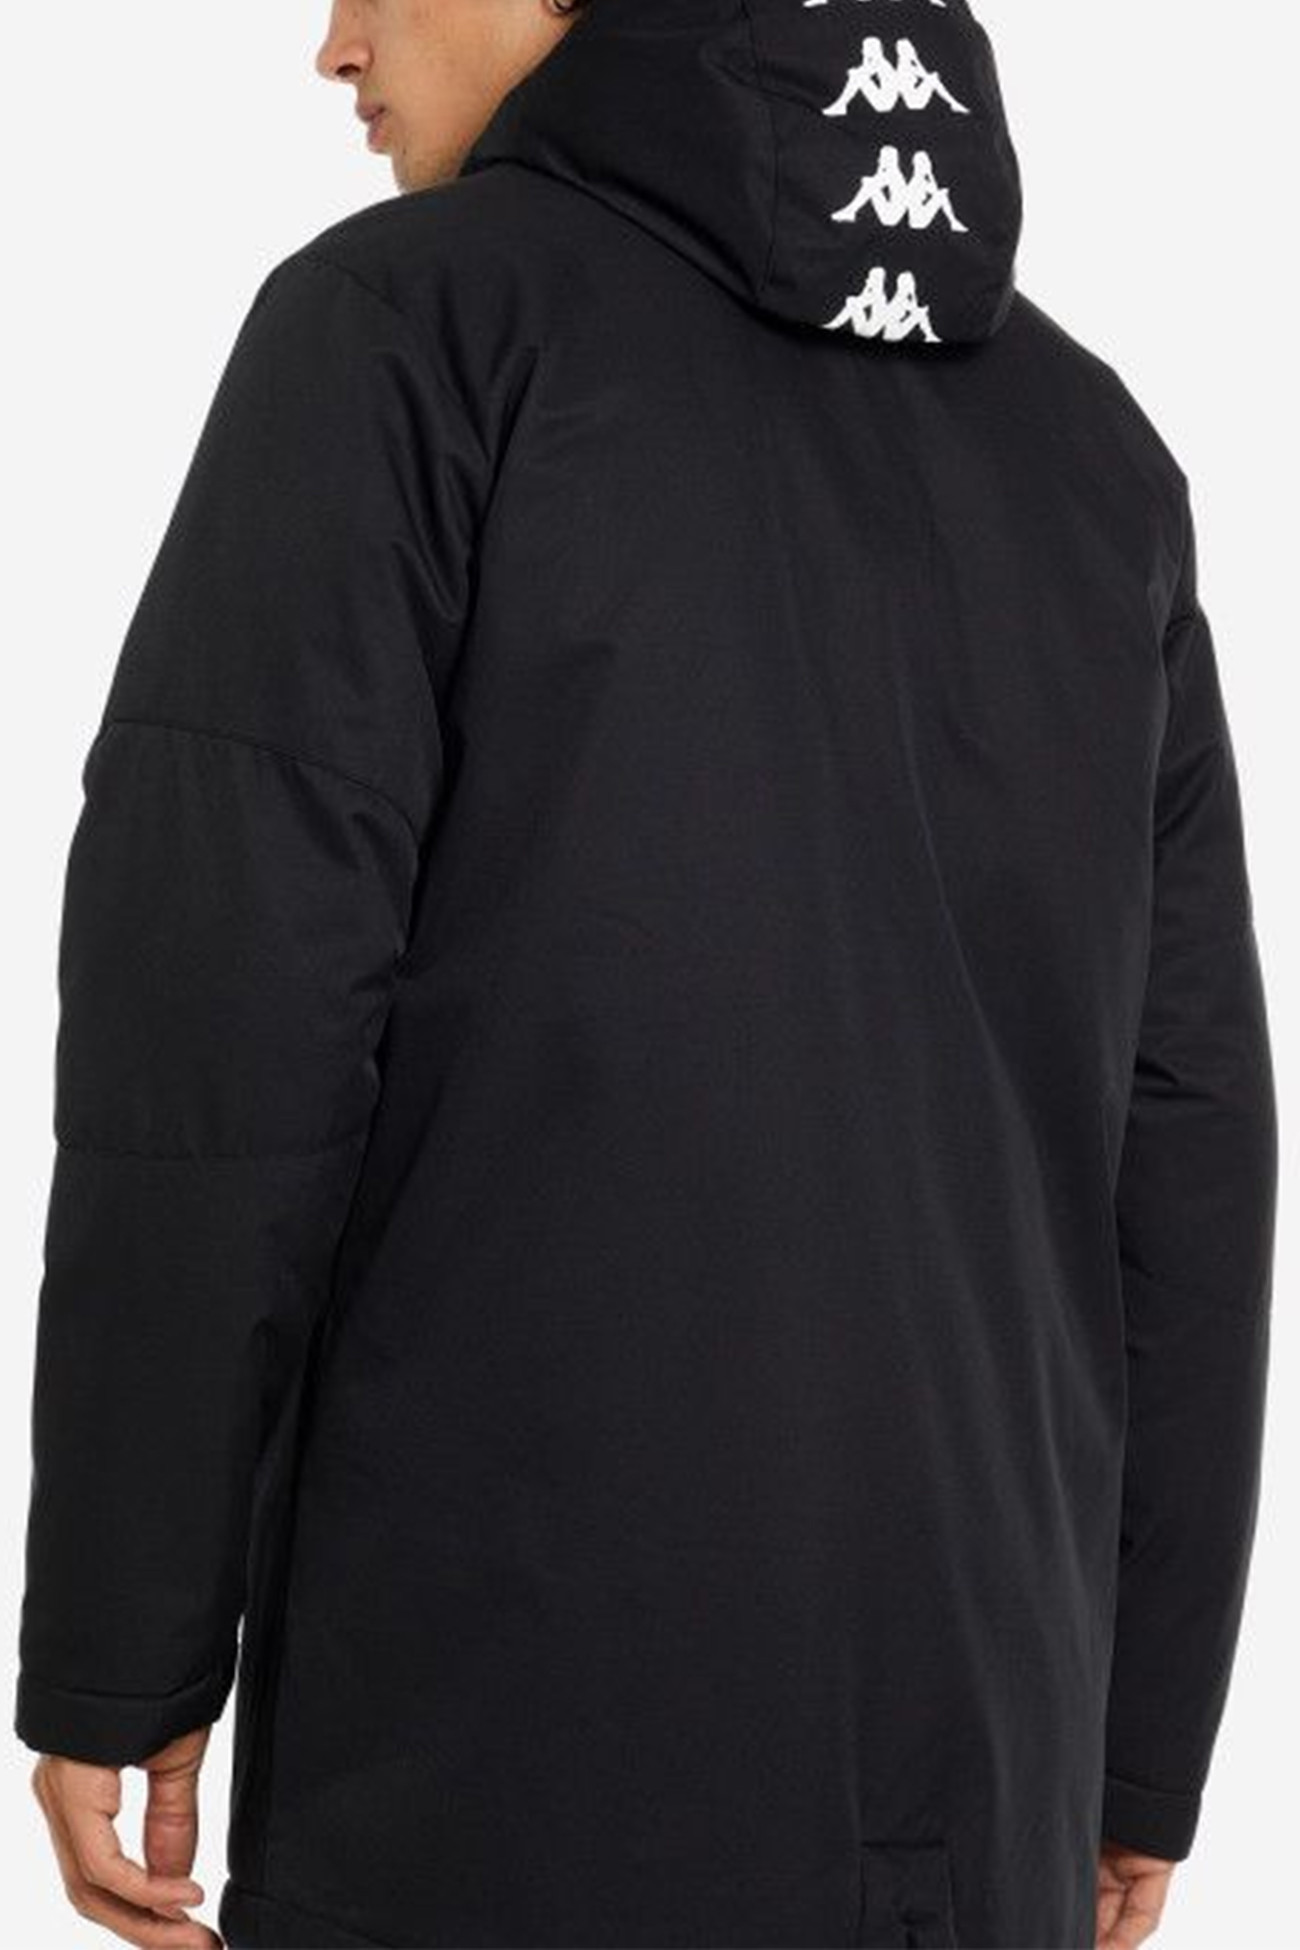 Куртка мужская Kappa  черная 116151-99 изображение 3